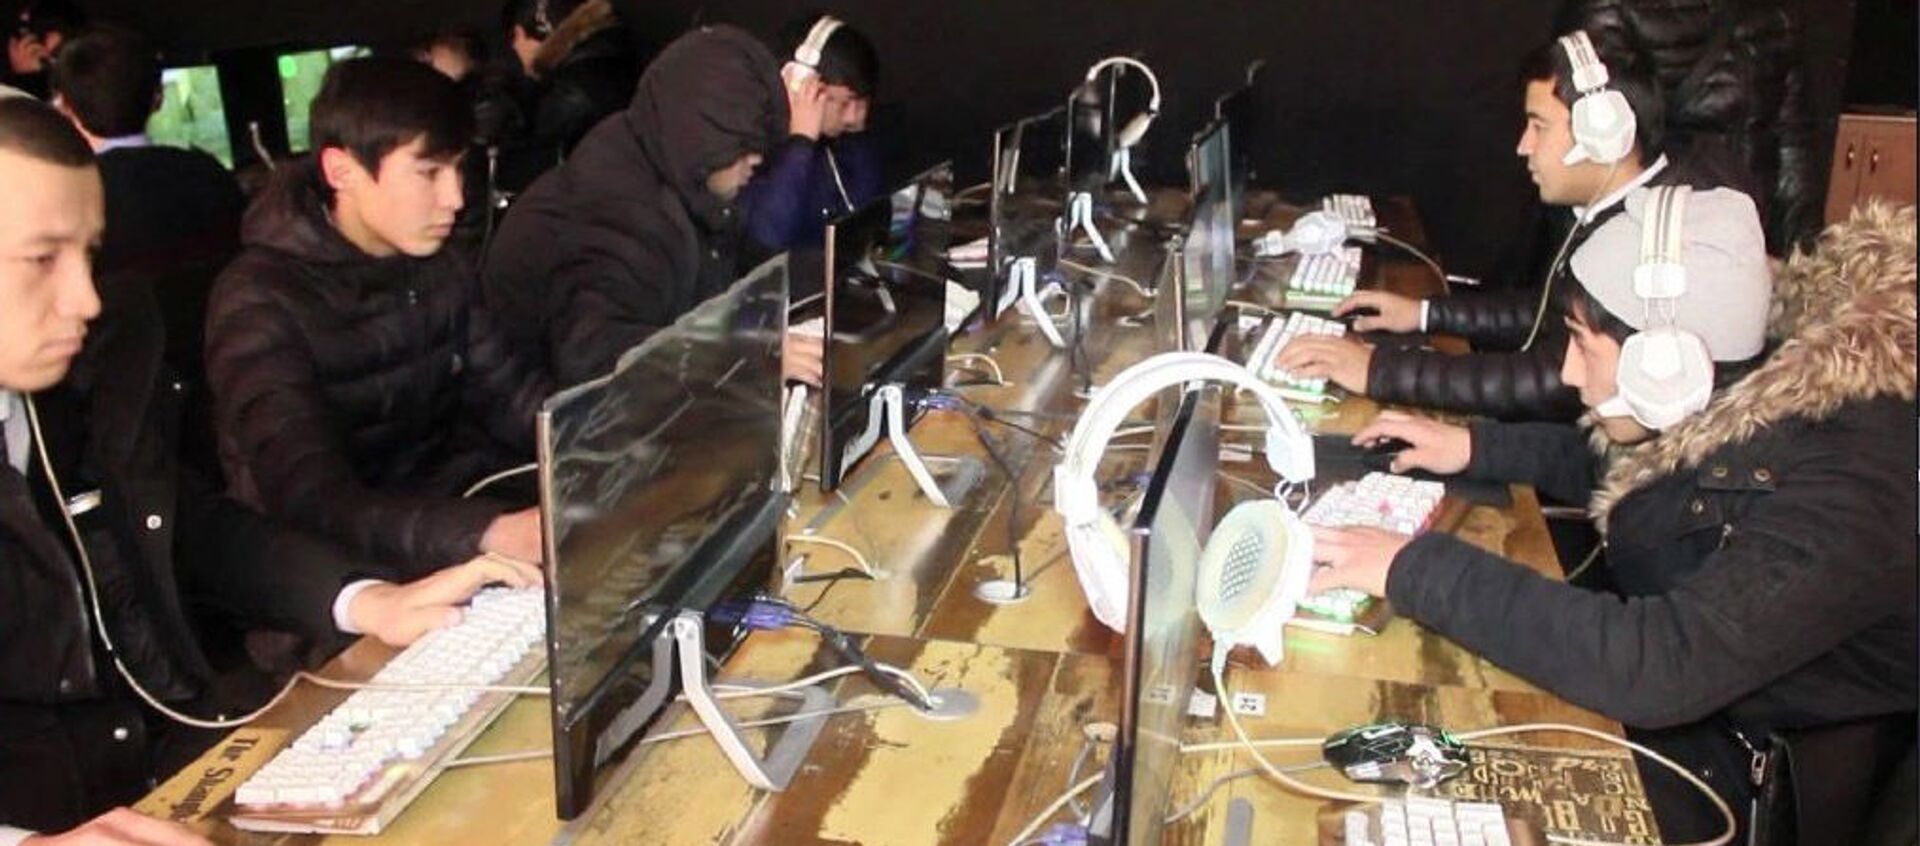 Дети играют на компьютеров в центре компьютерных игр в городе Худжанд - Sputnik Тоҷикистон, 1920, 21.12.2020